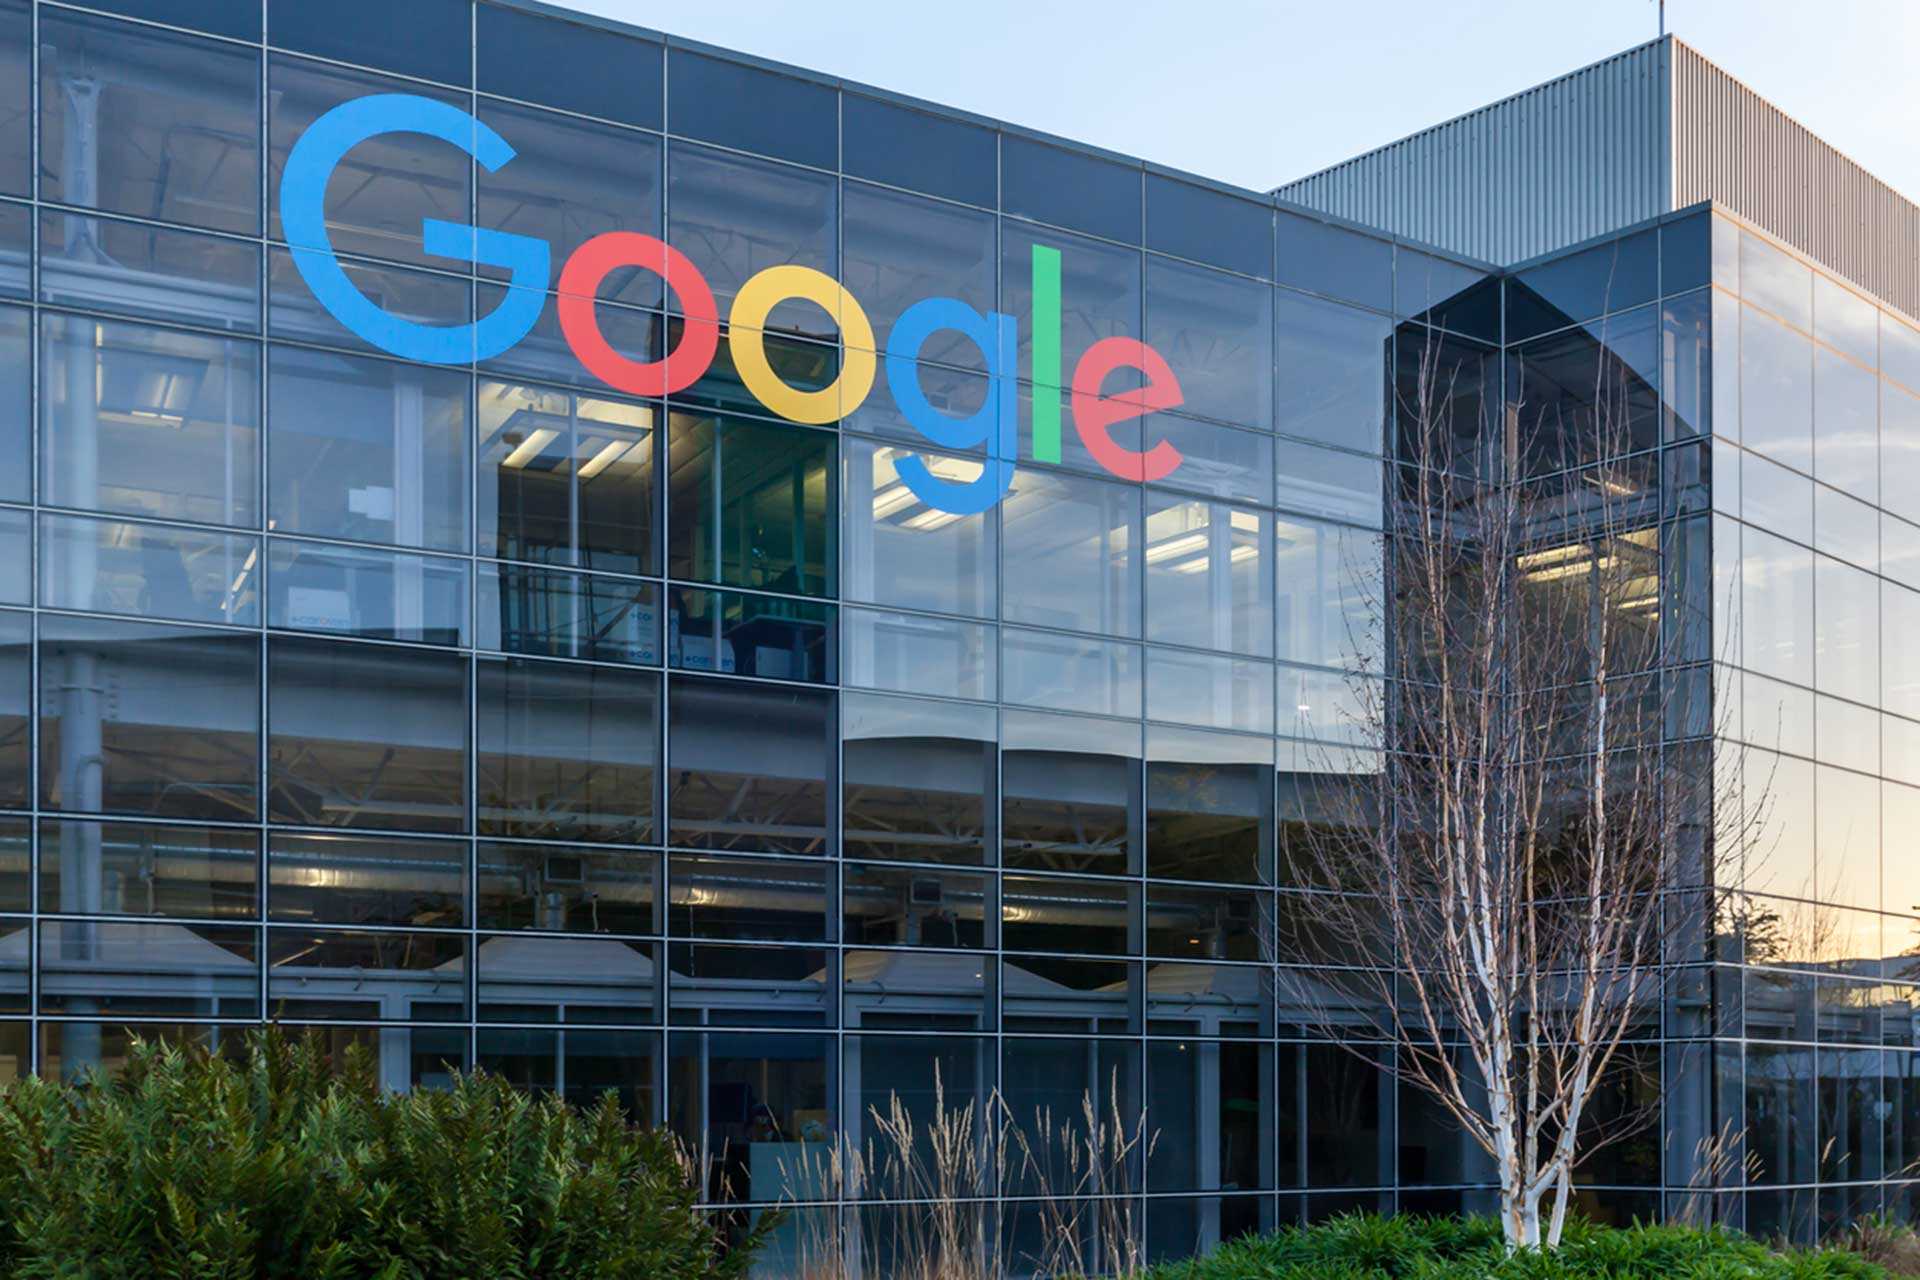 Google з'яўляецца амерыканскай кампаніяй, якая прапануе інтэрнэт-паслугі, са штаб-кватэрай у Маунтин-В'ю, штат Каліфорнія, у так званым Googleplex.